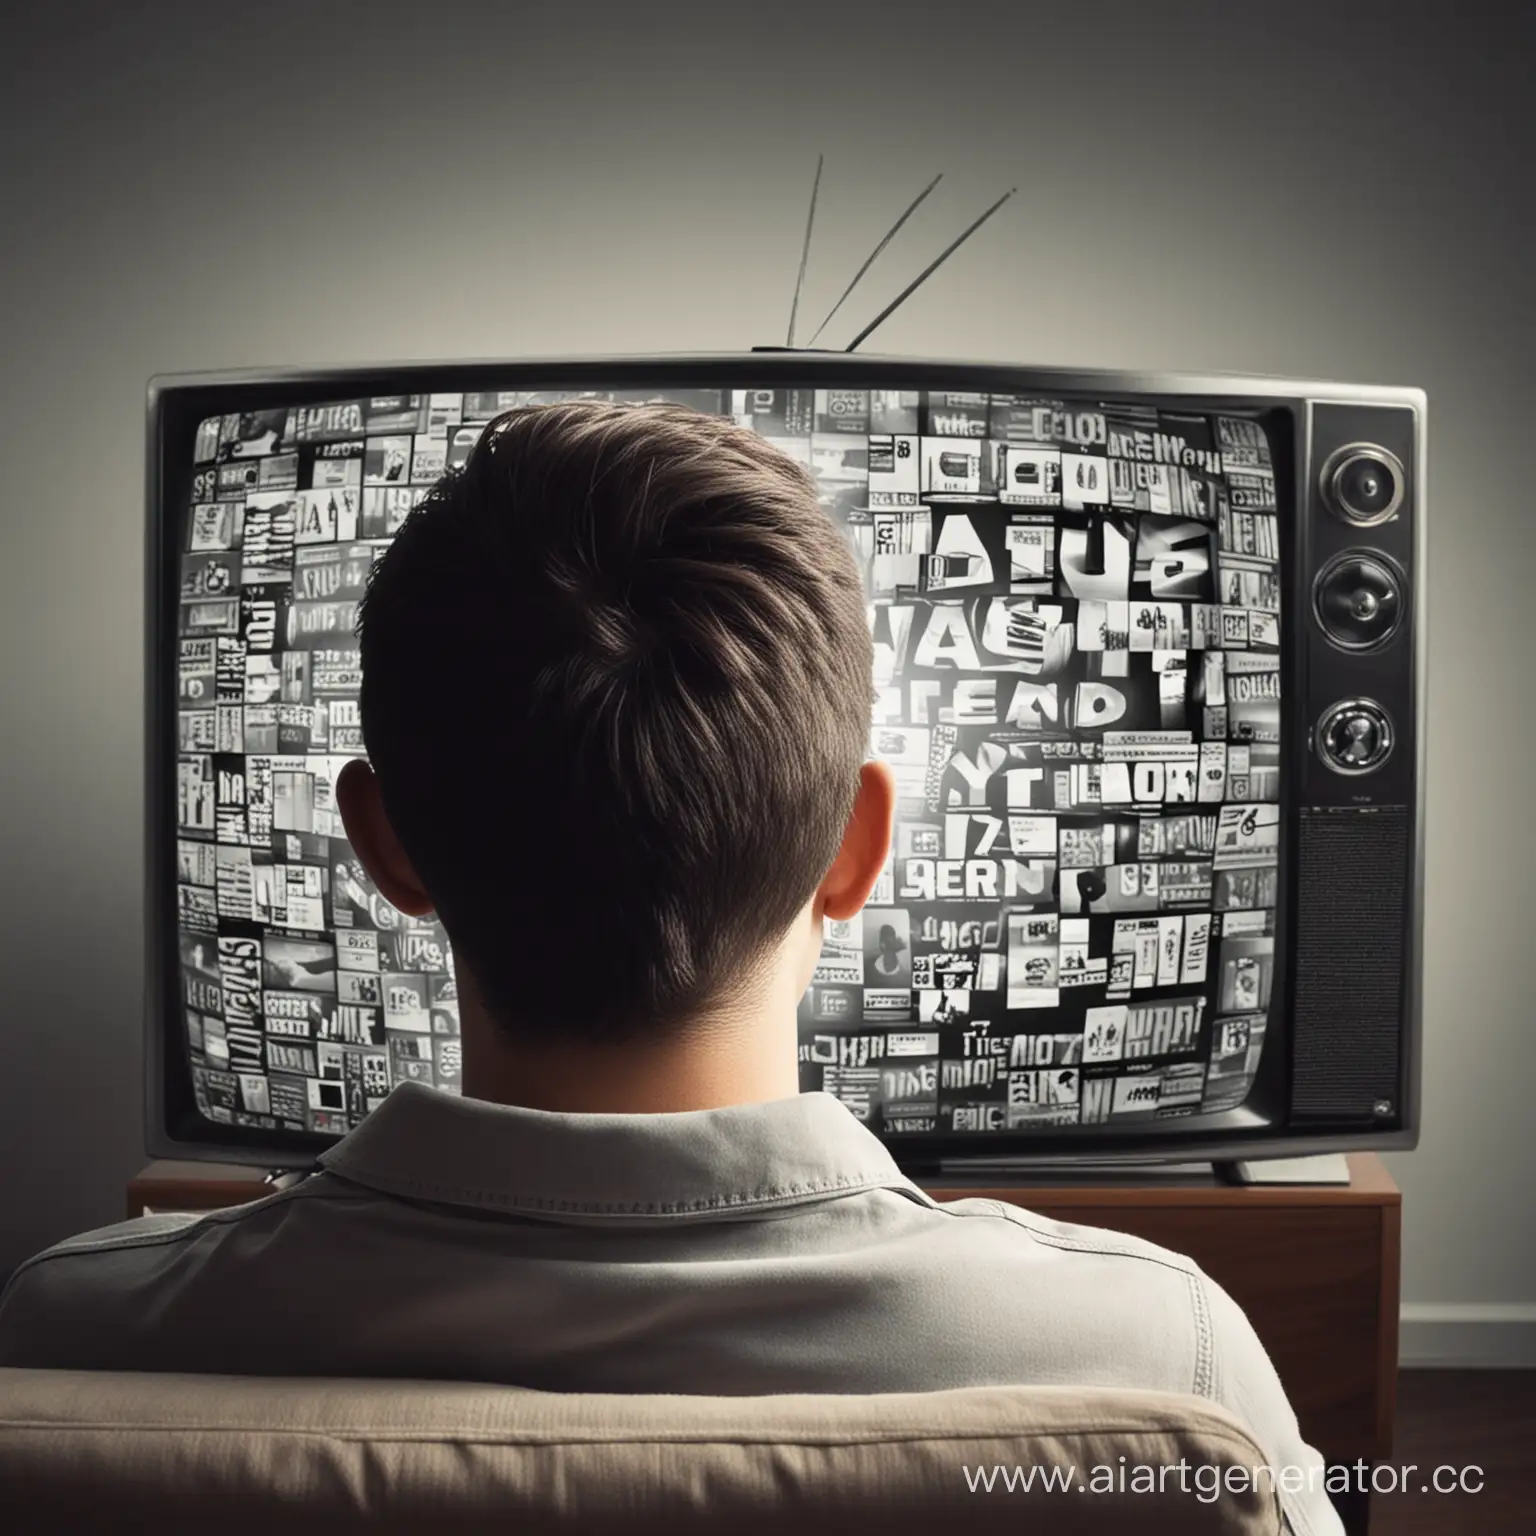 человек смотрит телевизор и видит рекламу в это время в голове человека идет реклама

